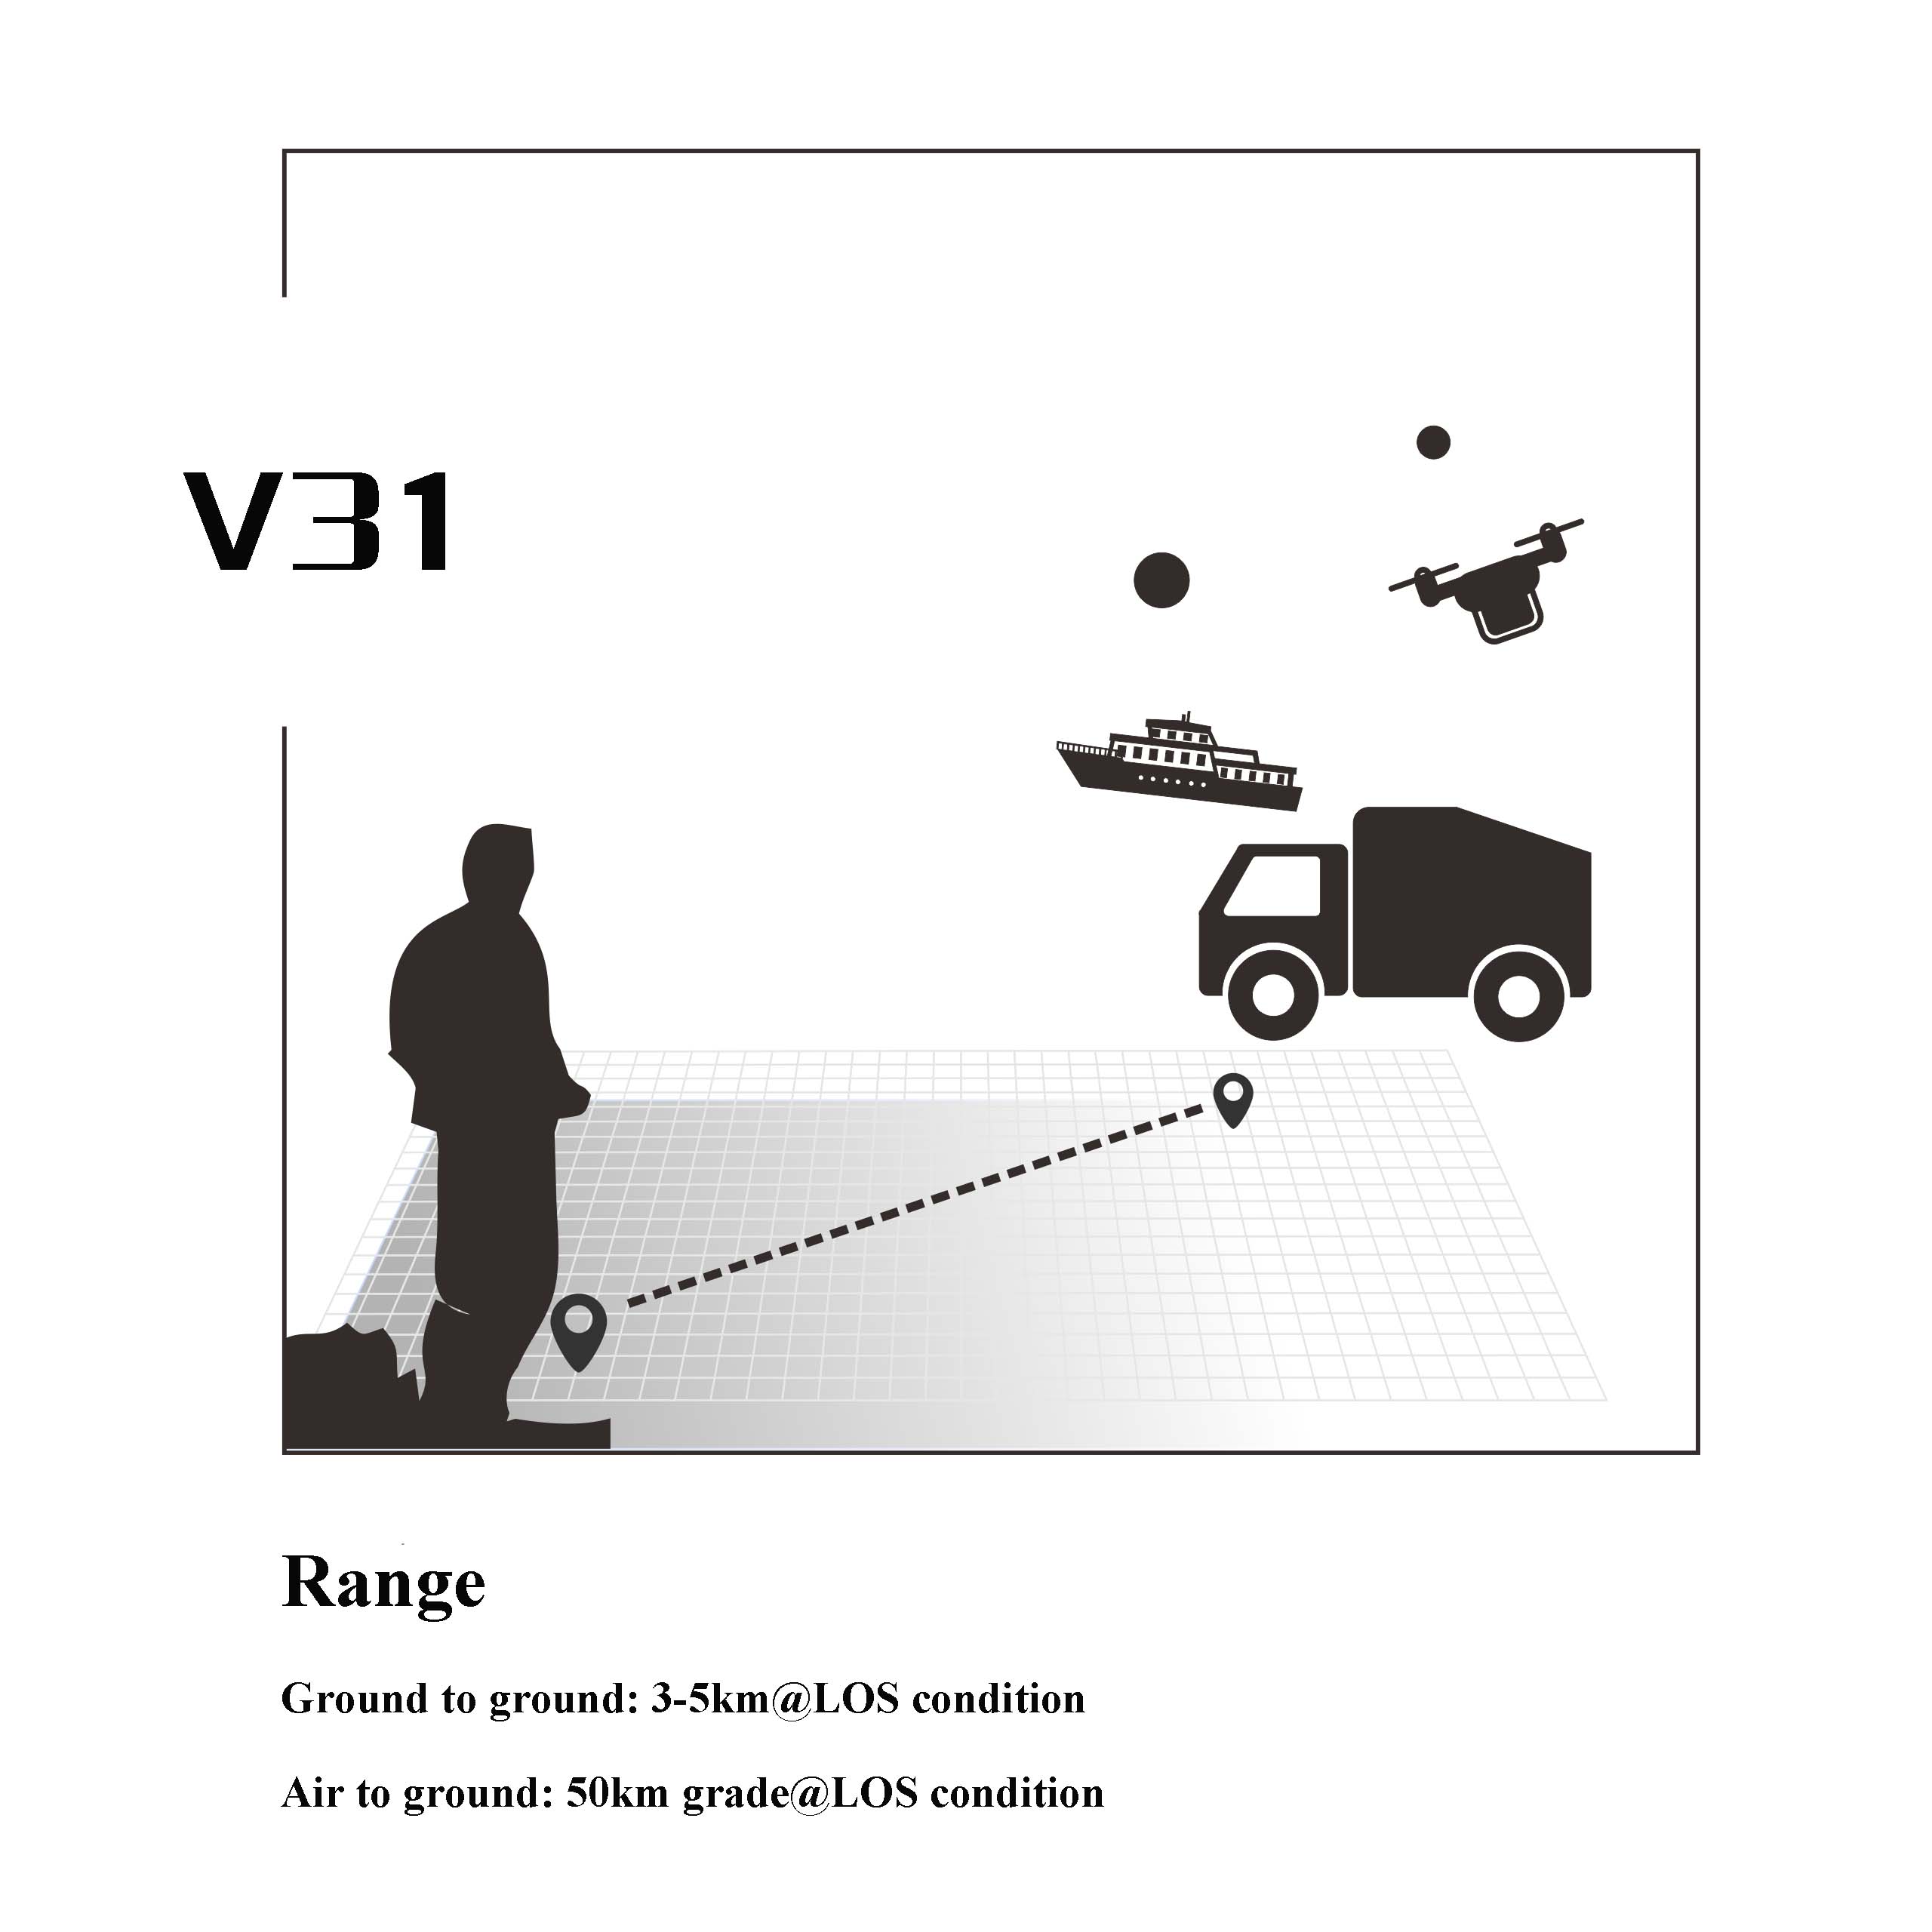 V31 Video & telemetry & RC link (20km grade)